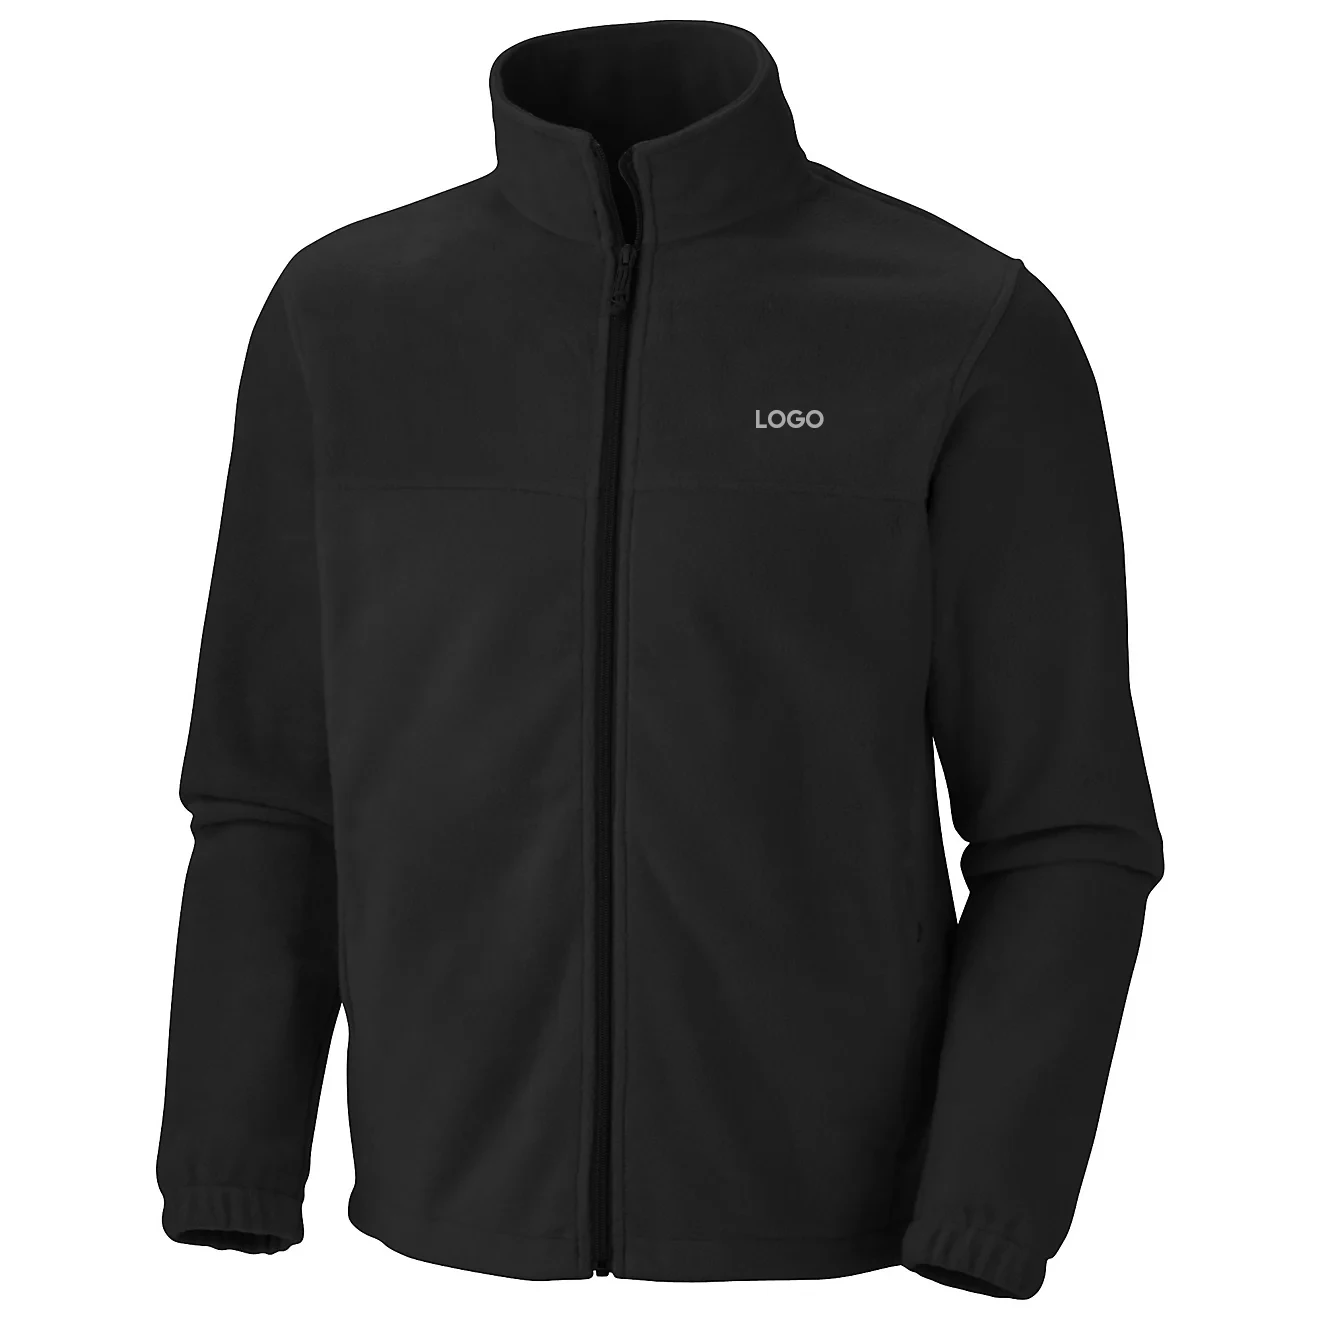 Winter thick polar fleece jacket mountaineering charge jacket fleece jacket inner garment